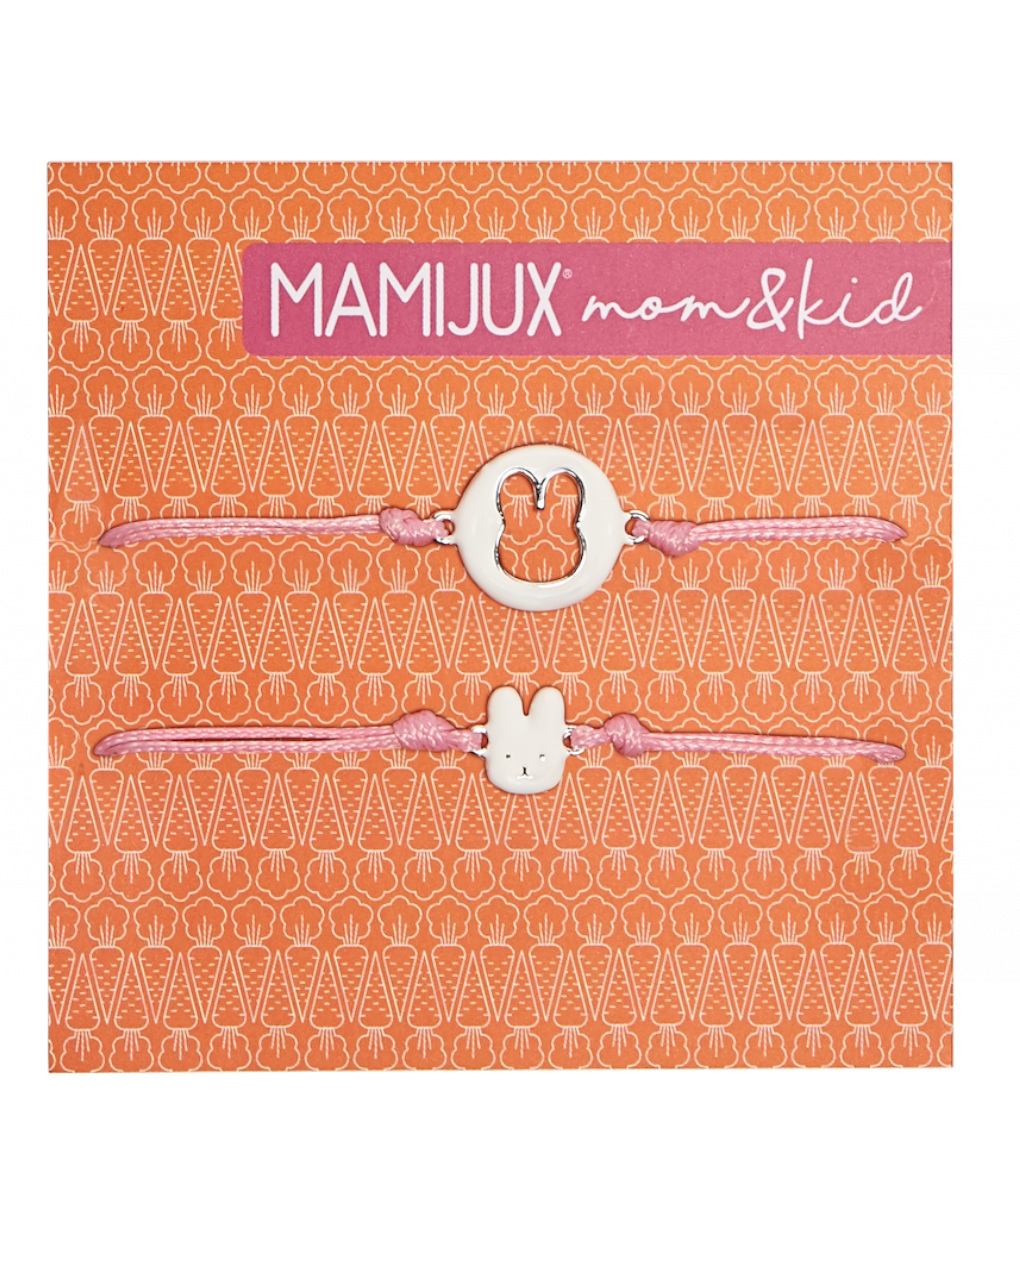 Mamijux bracciale coniglio bianco - mom&kid - Mamijux